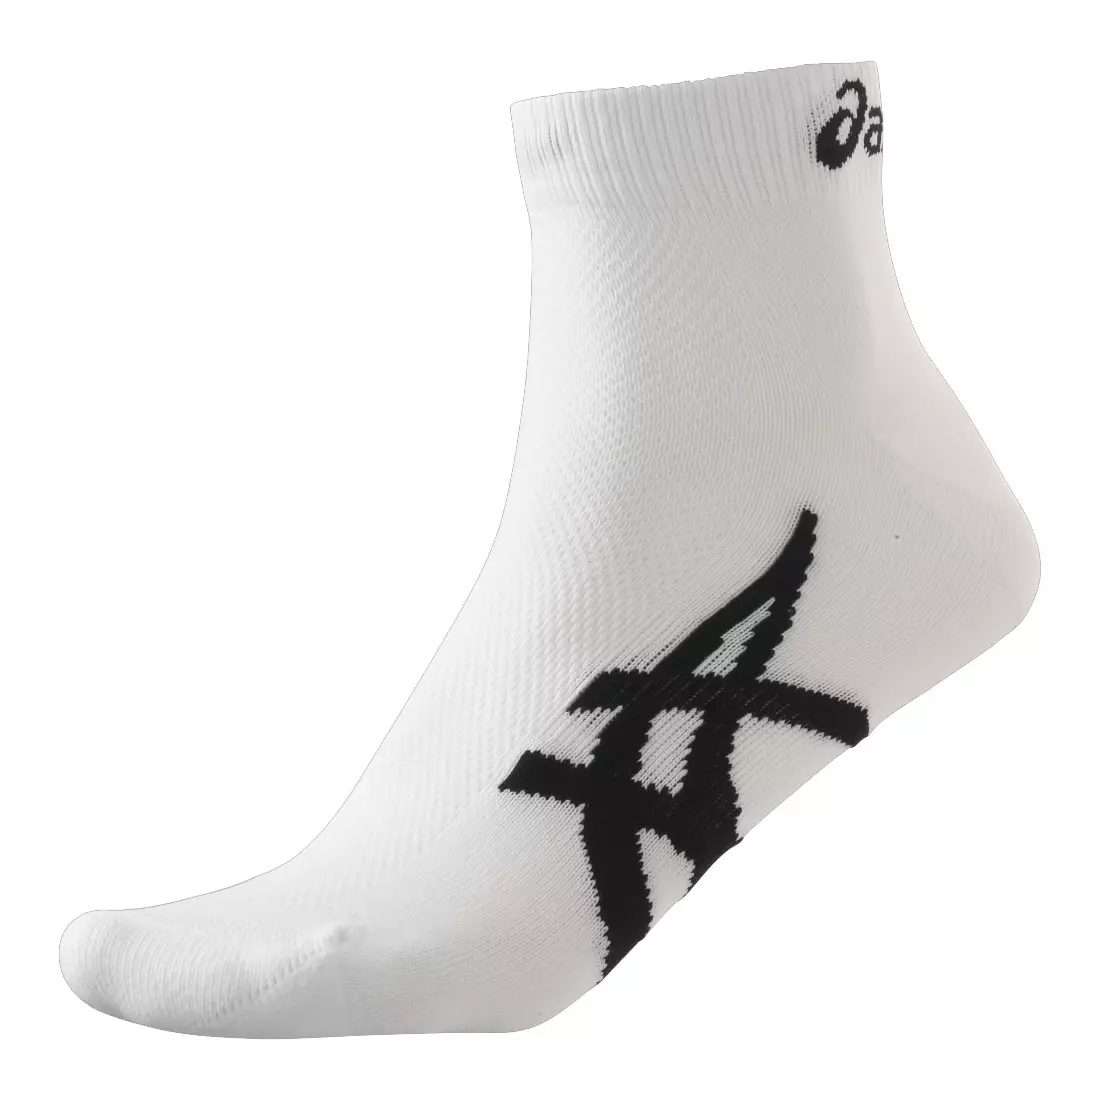 Běžecké ponožky řady ASICS 1000, 2 balení 123438-0001